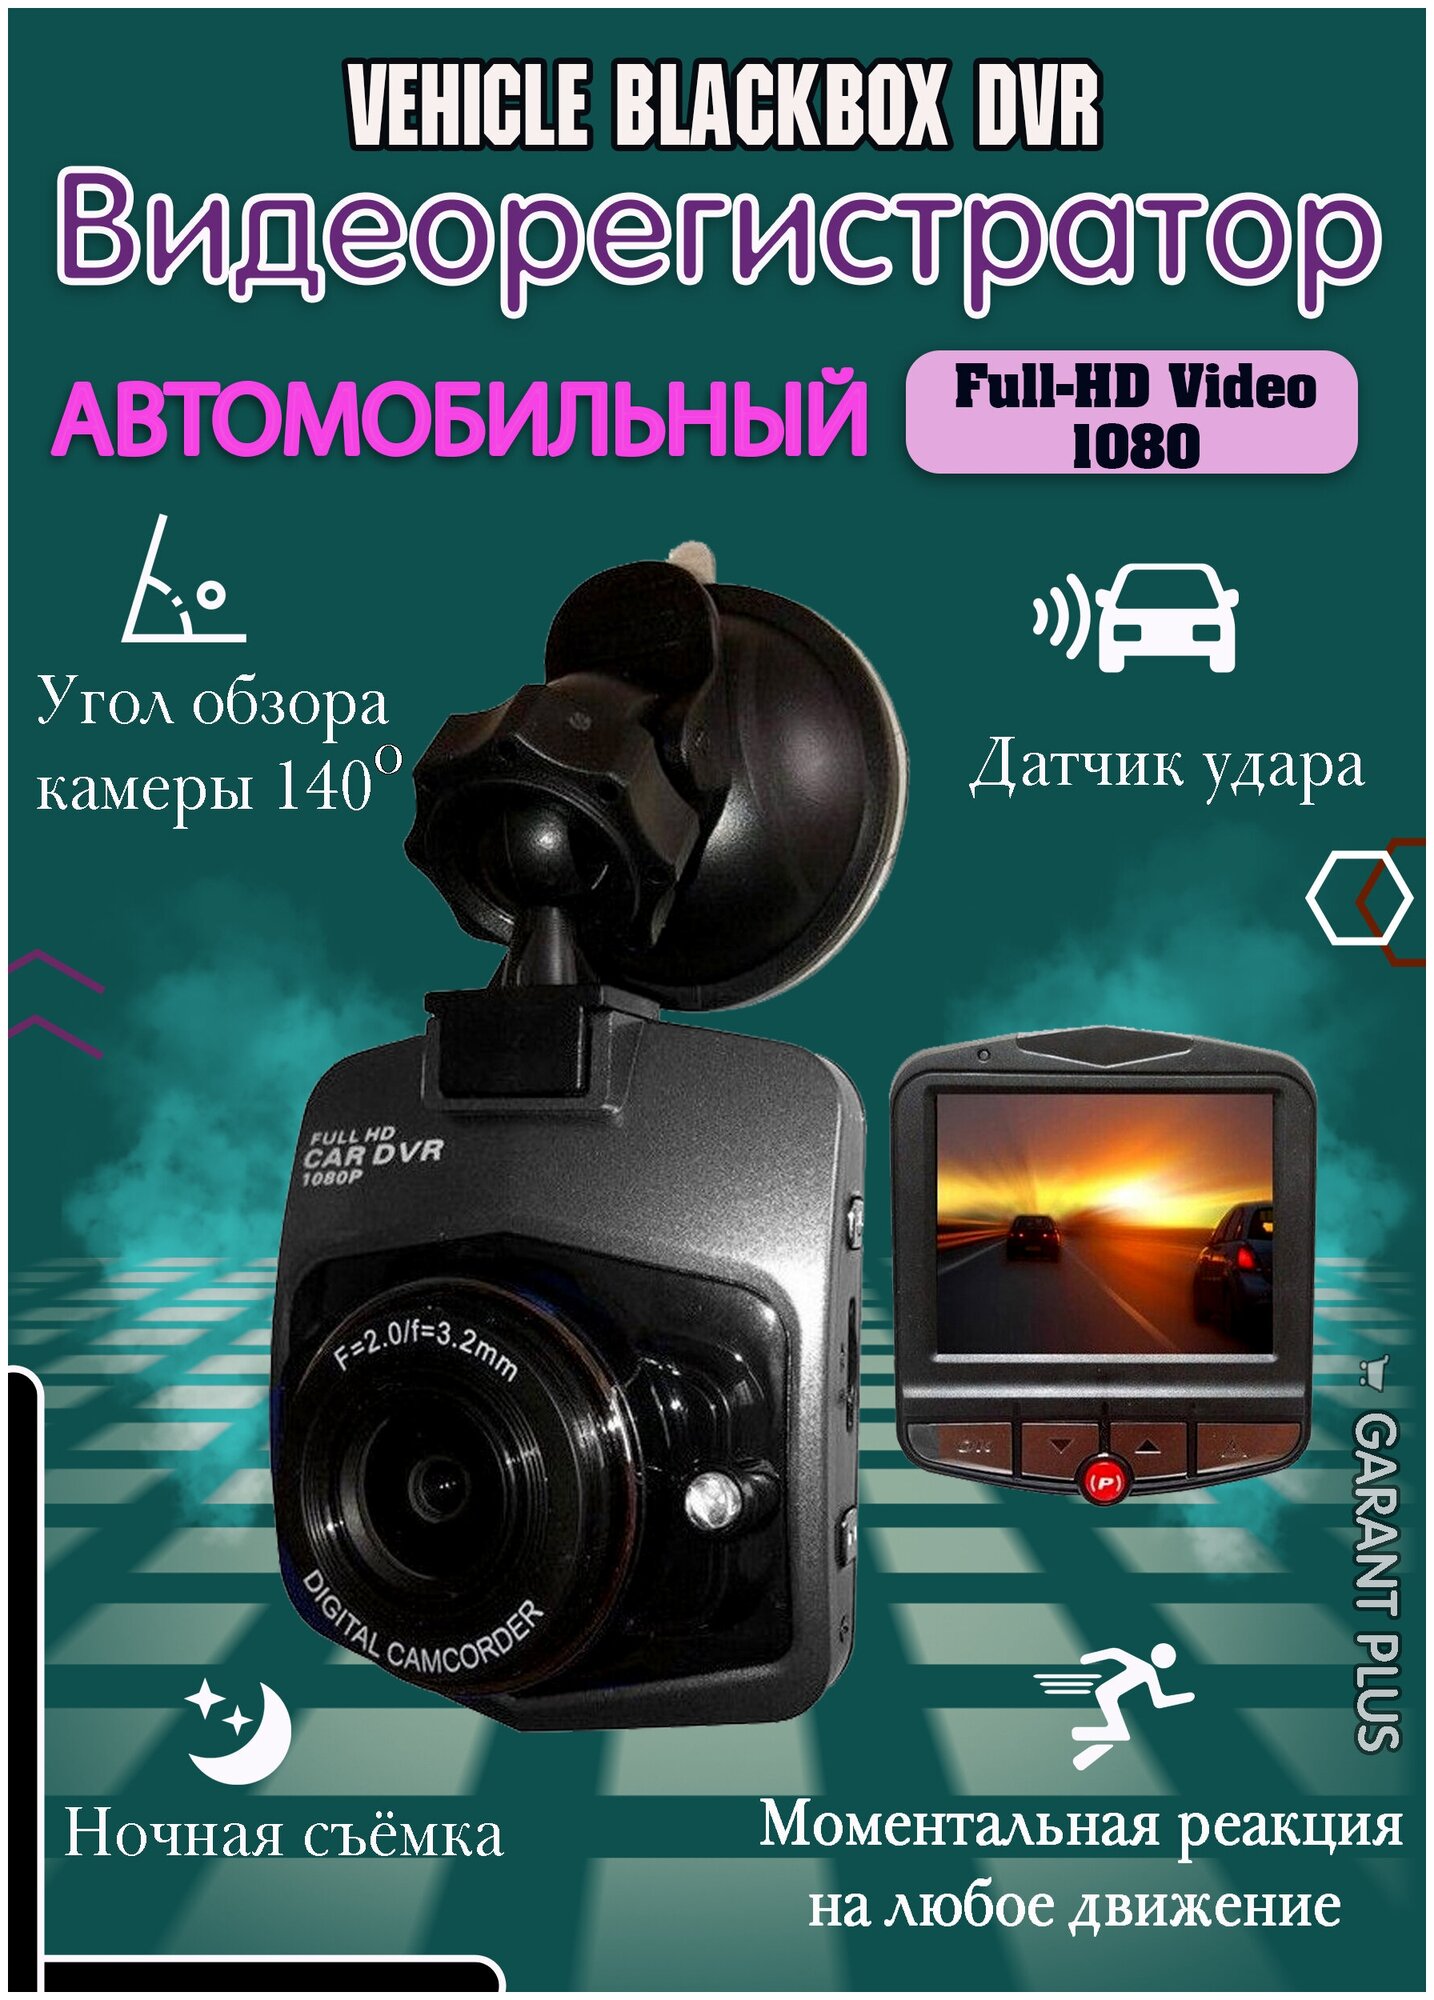 Автомобильный регистратор поворотный /Vehicle Blackbox/Full HD 1080/ИК-подсветка/датчик удара/черный